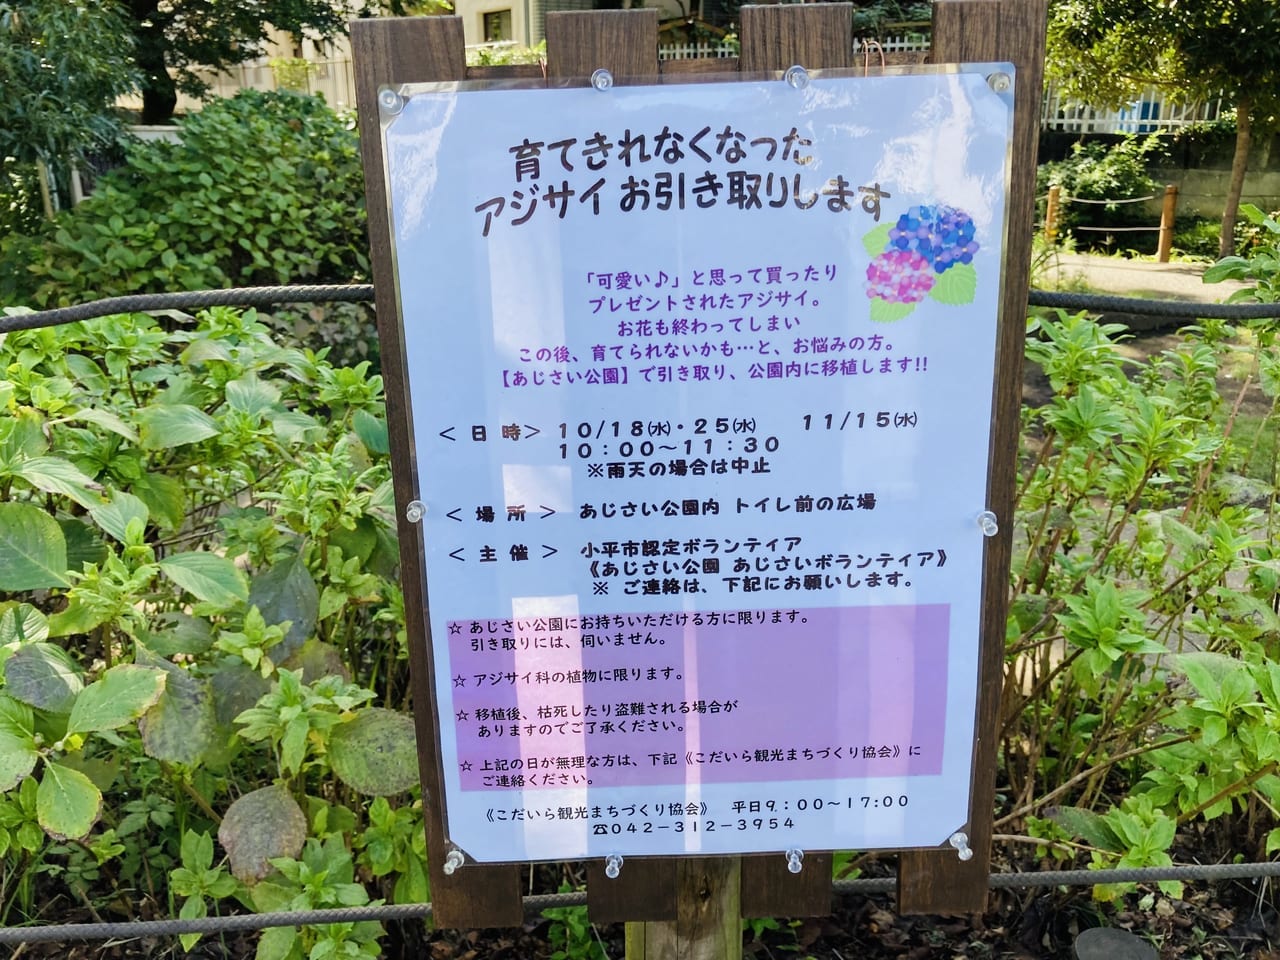 紫陽花ポスター